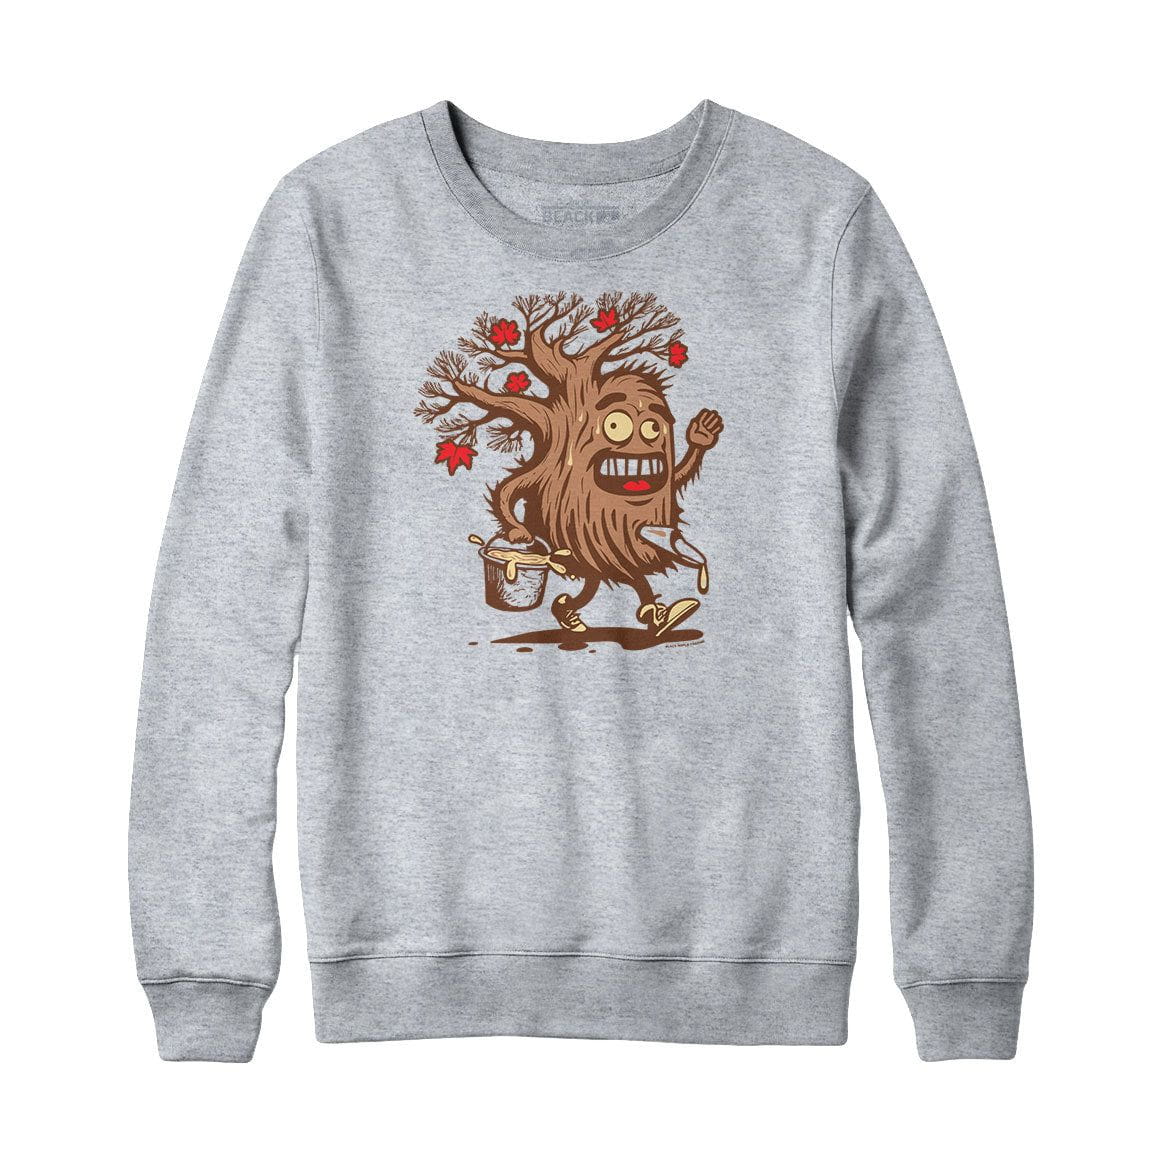 Sappy the Maple Tree Sweatshirt or Hoodie